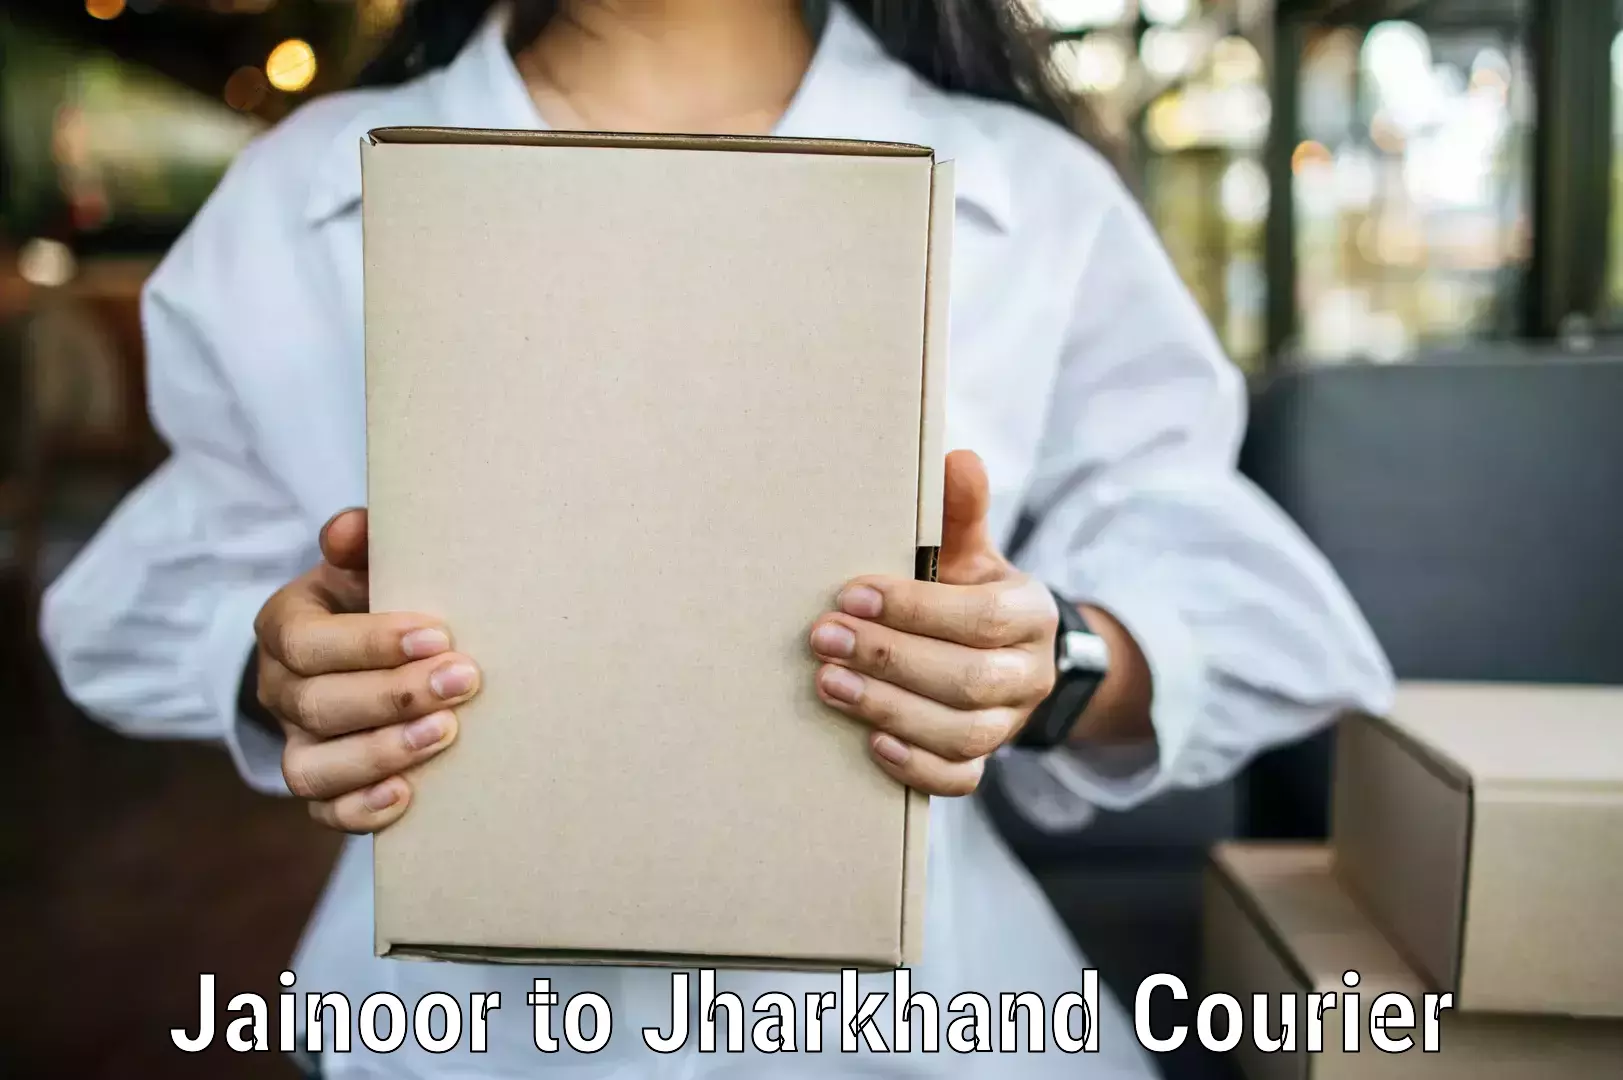 Cost-effective courier options Jainoor to Adityapur